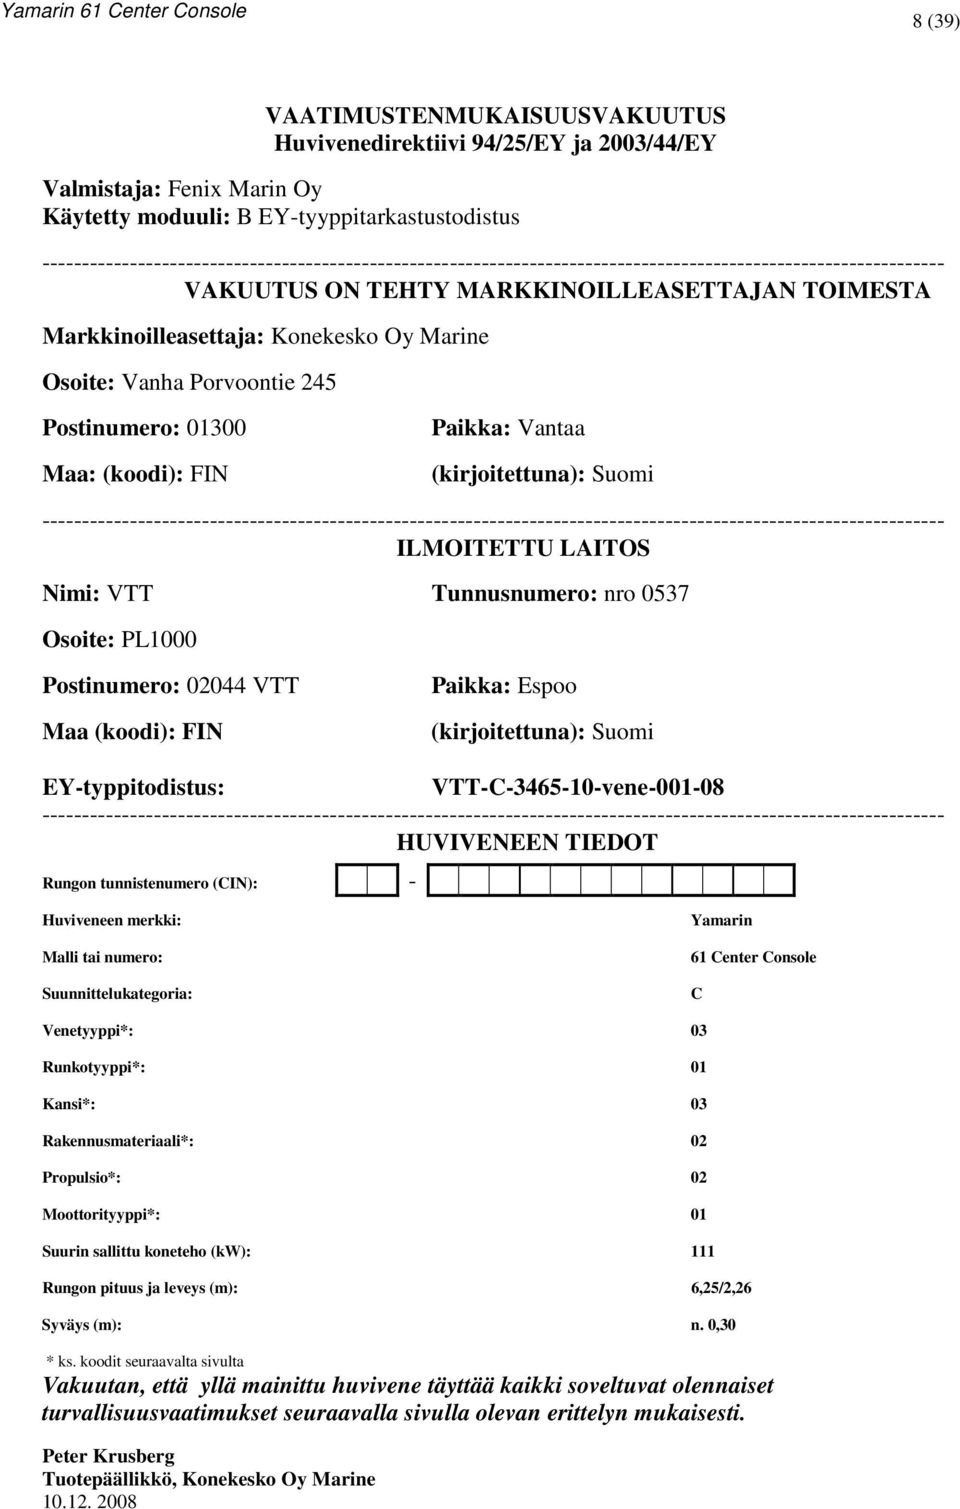 Marine Osoite: Vanha Porvoontie 245 Postinumero: 01300 Maa: (koodi): FIN Paikka: Vantaa (kirjoitettuna): Suomi